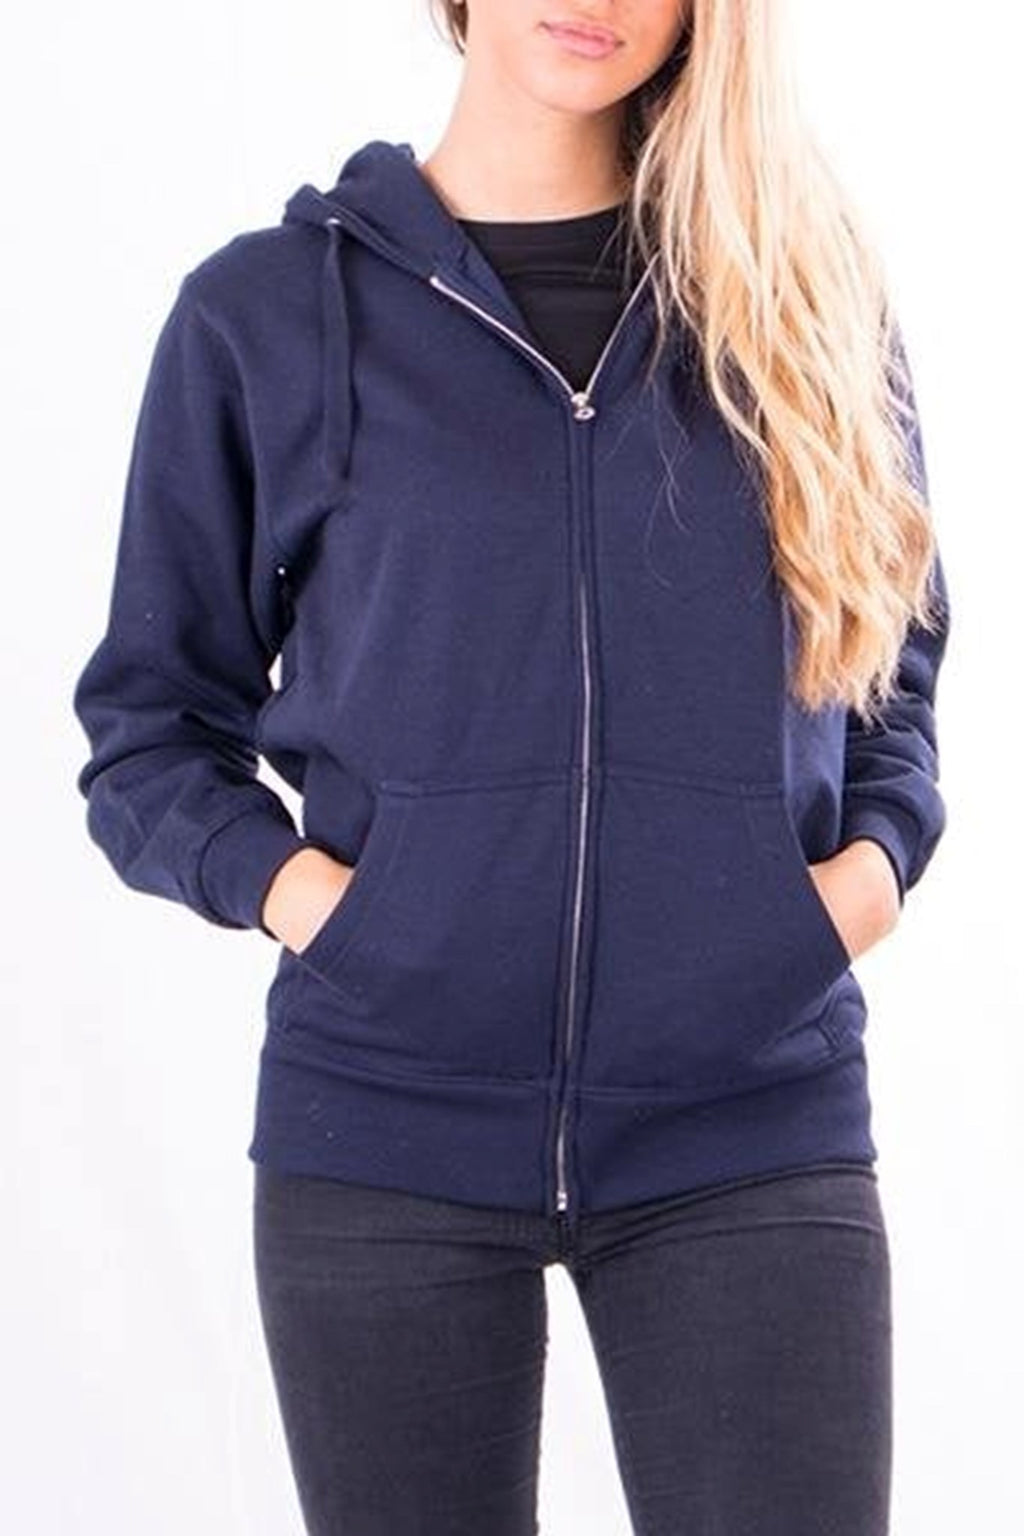 Basic zip hoodie - Navy